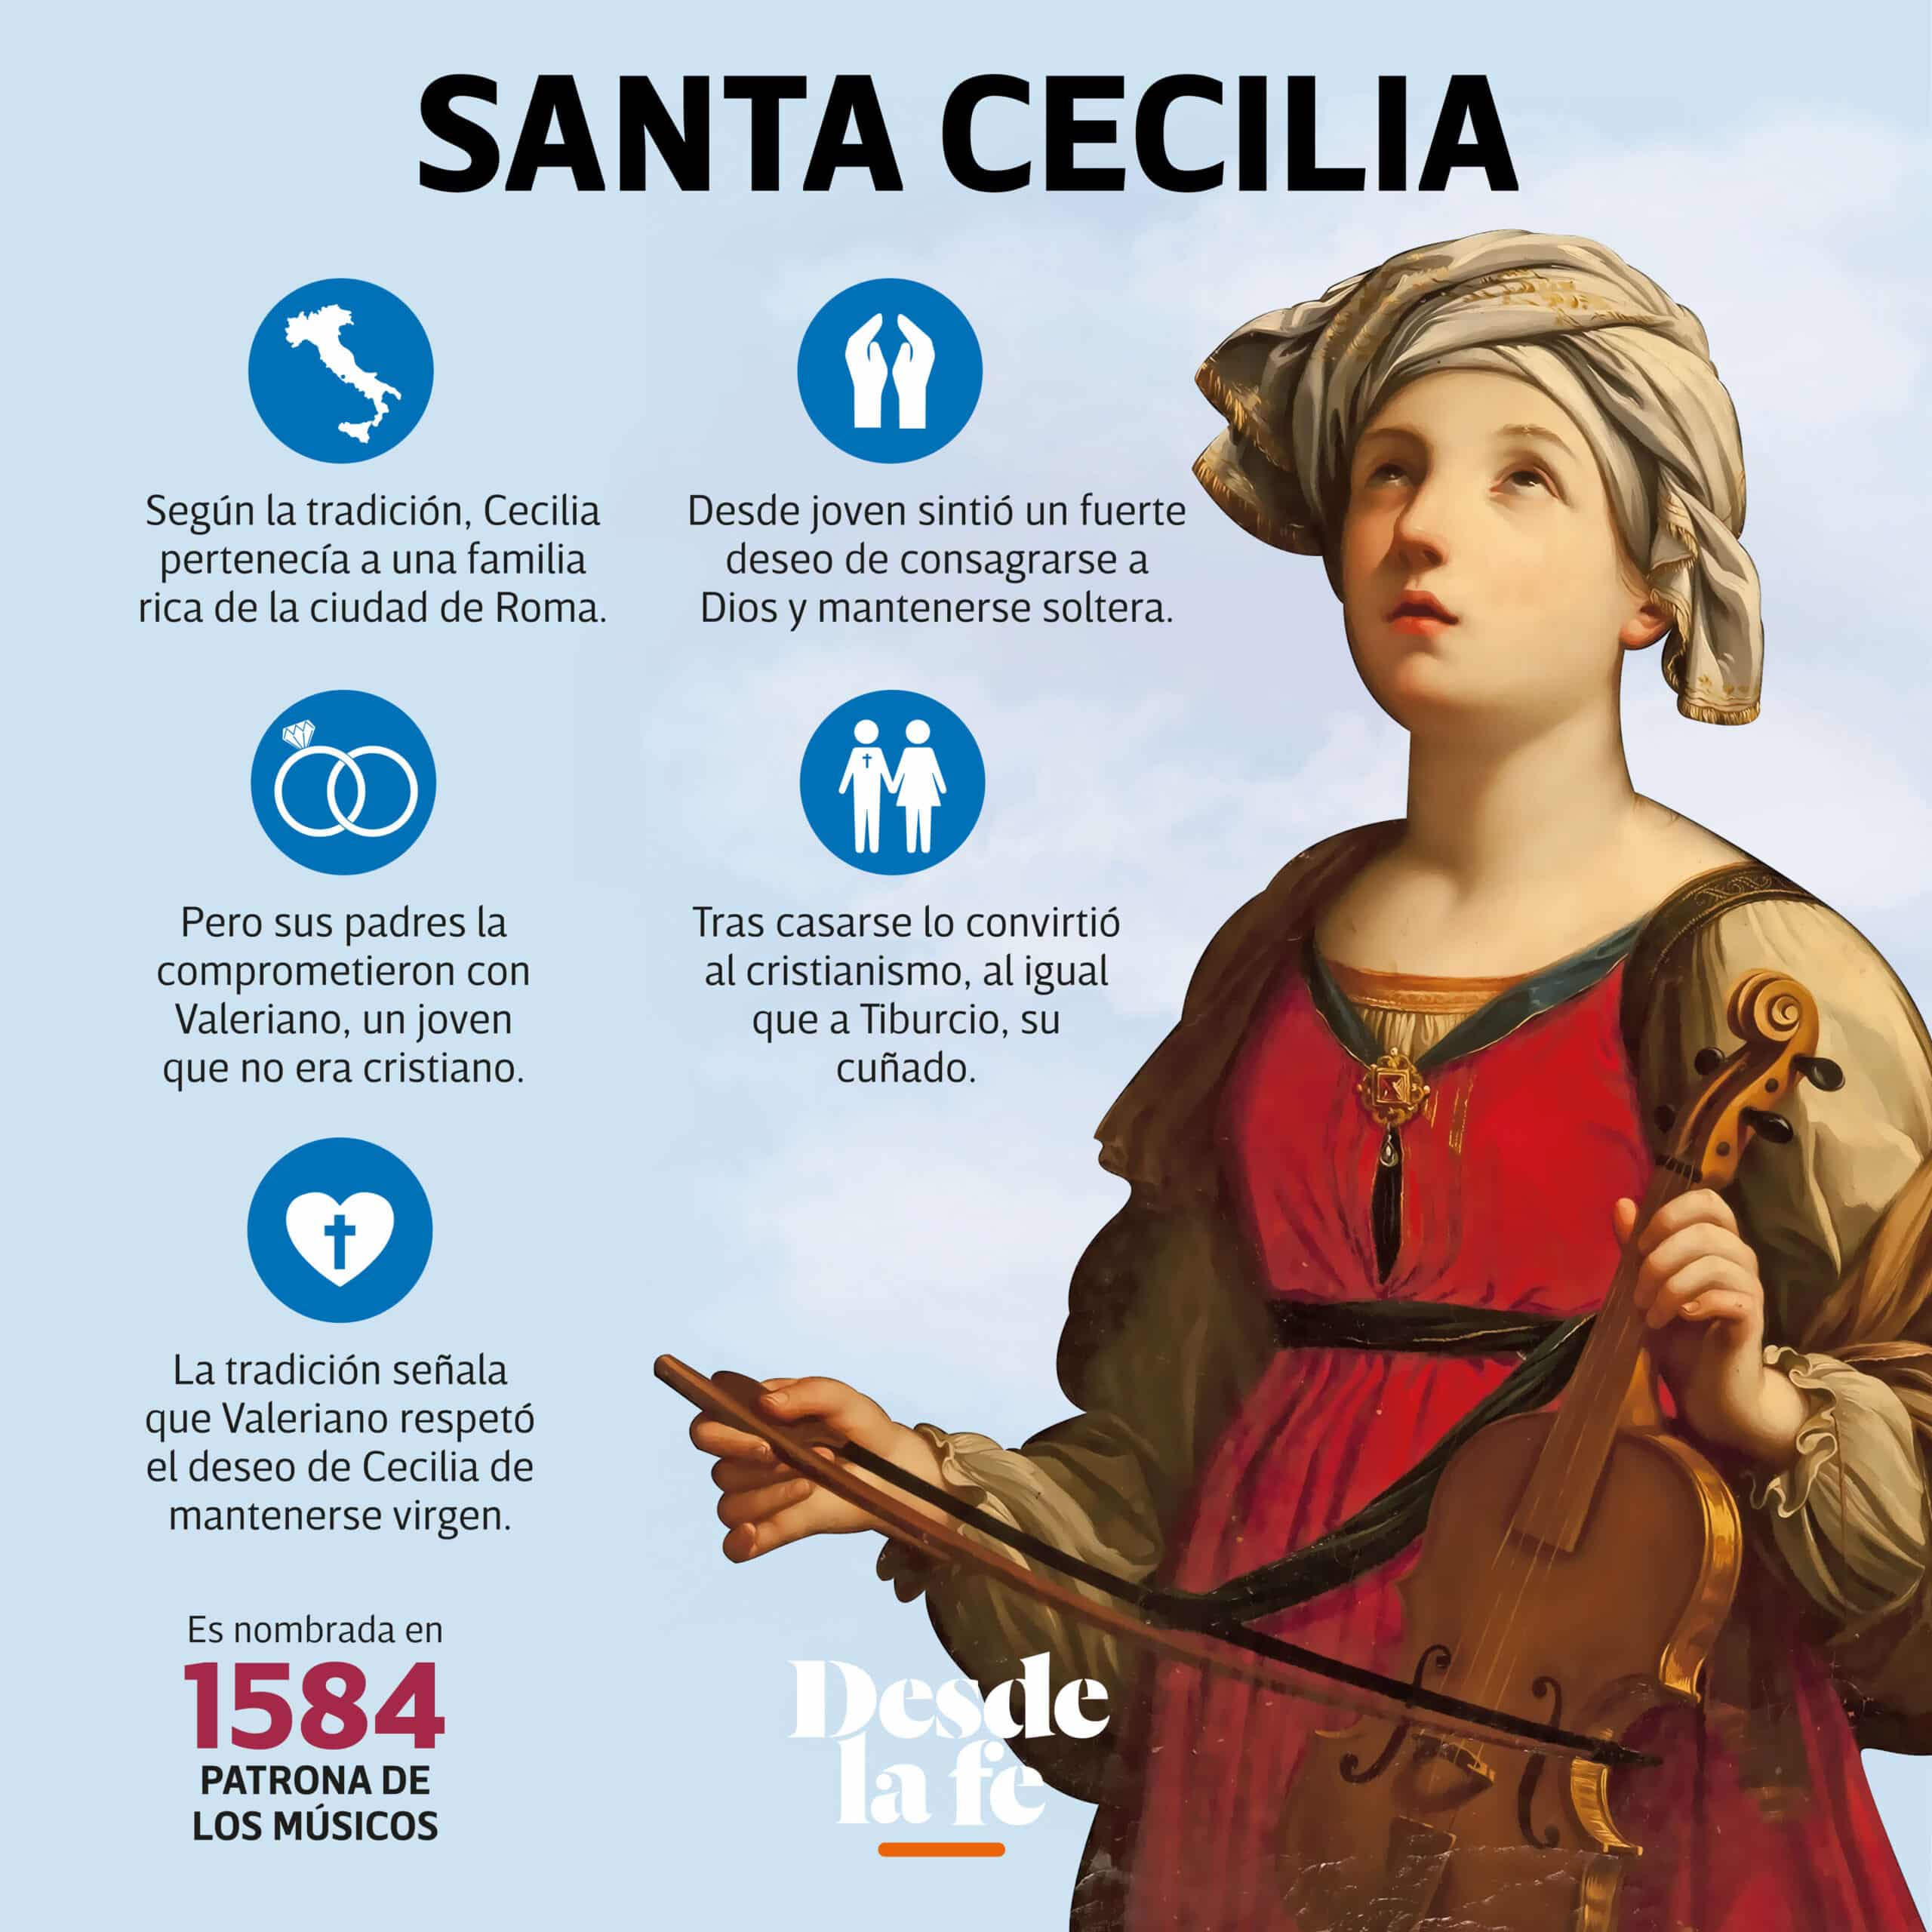 Santa Cecilia, patrona de los músicos.